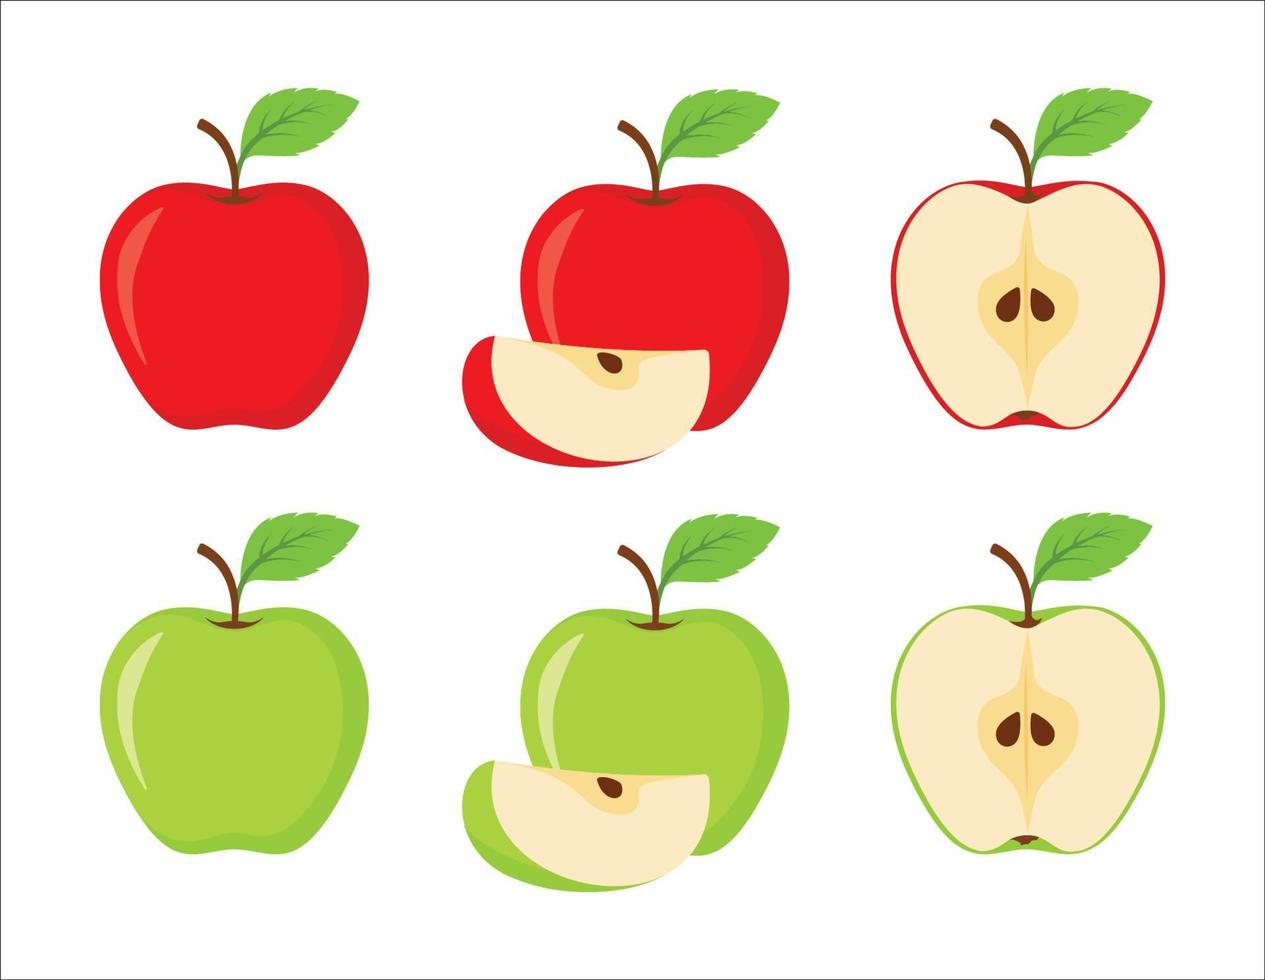 äpple frukt vektor uppsättning i röd och grön Färg. uppsättning av äpplen och skivad äpplen isolerat på vit bakgrund. hela, halv, skiva av röd och grön äpple frukt med grön löv. vektor illustration